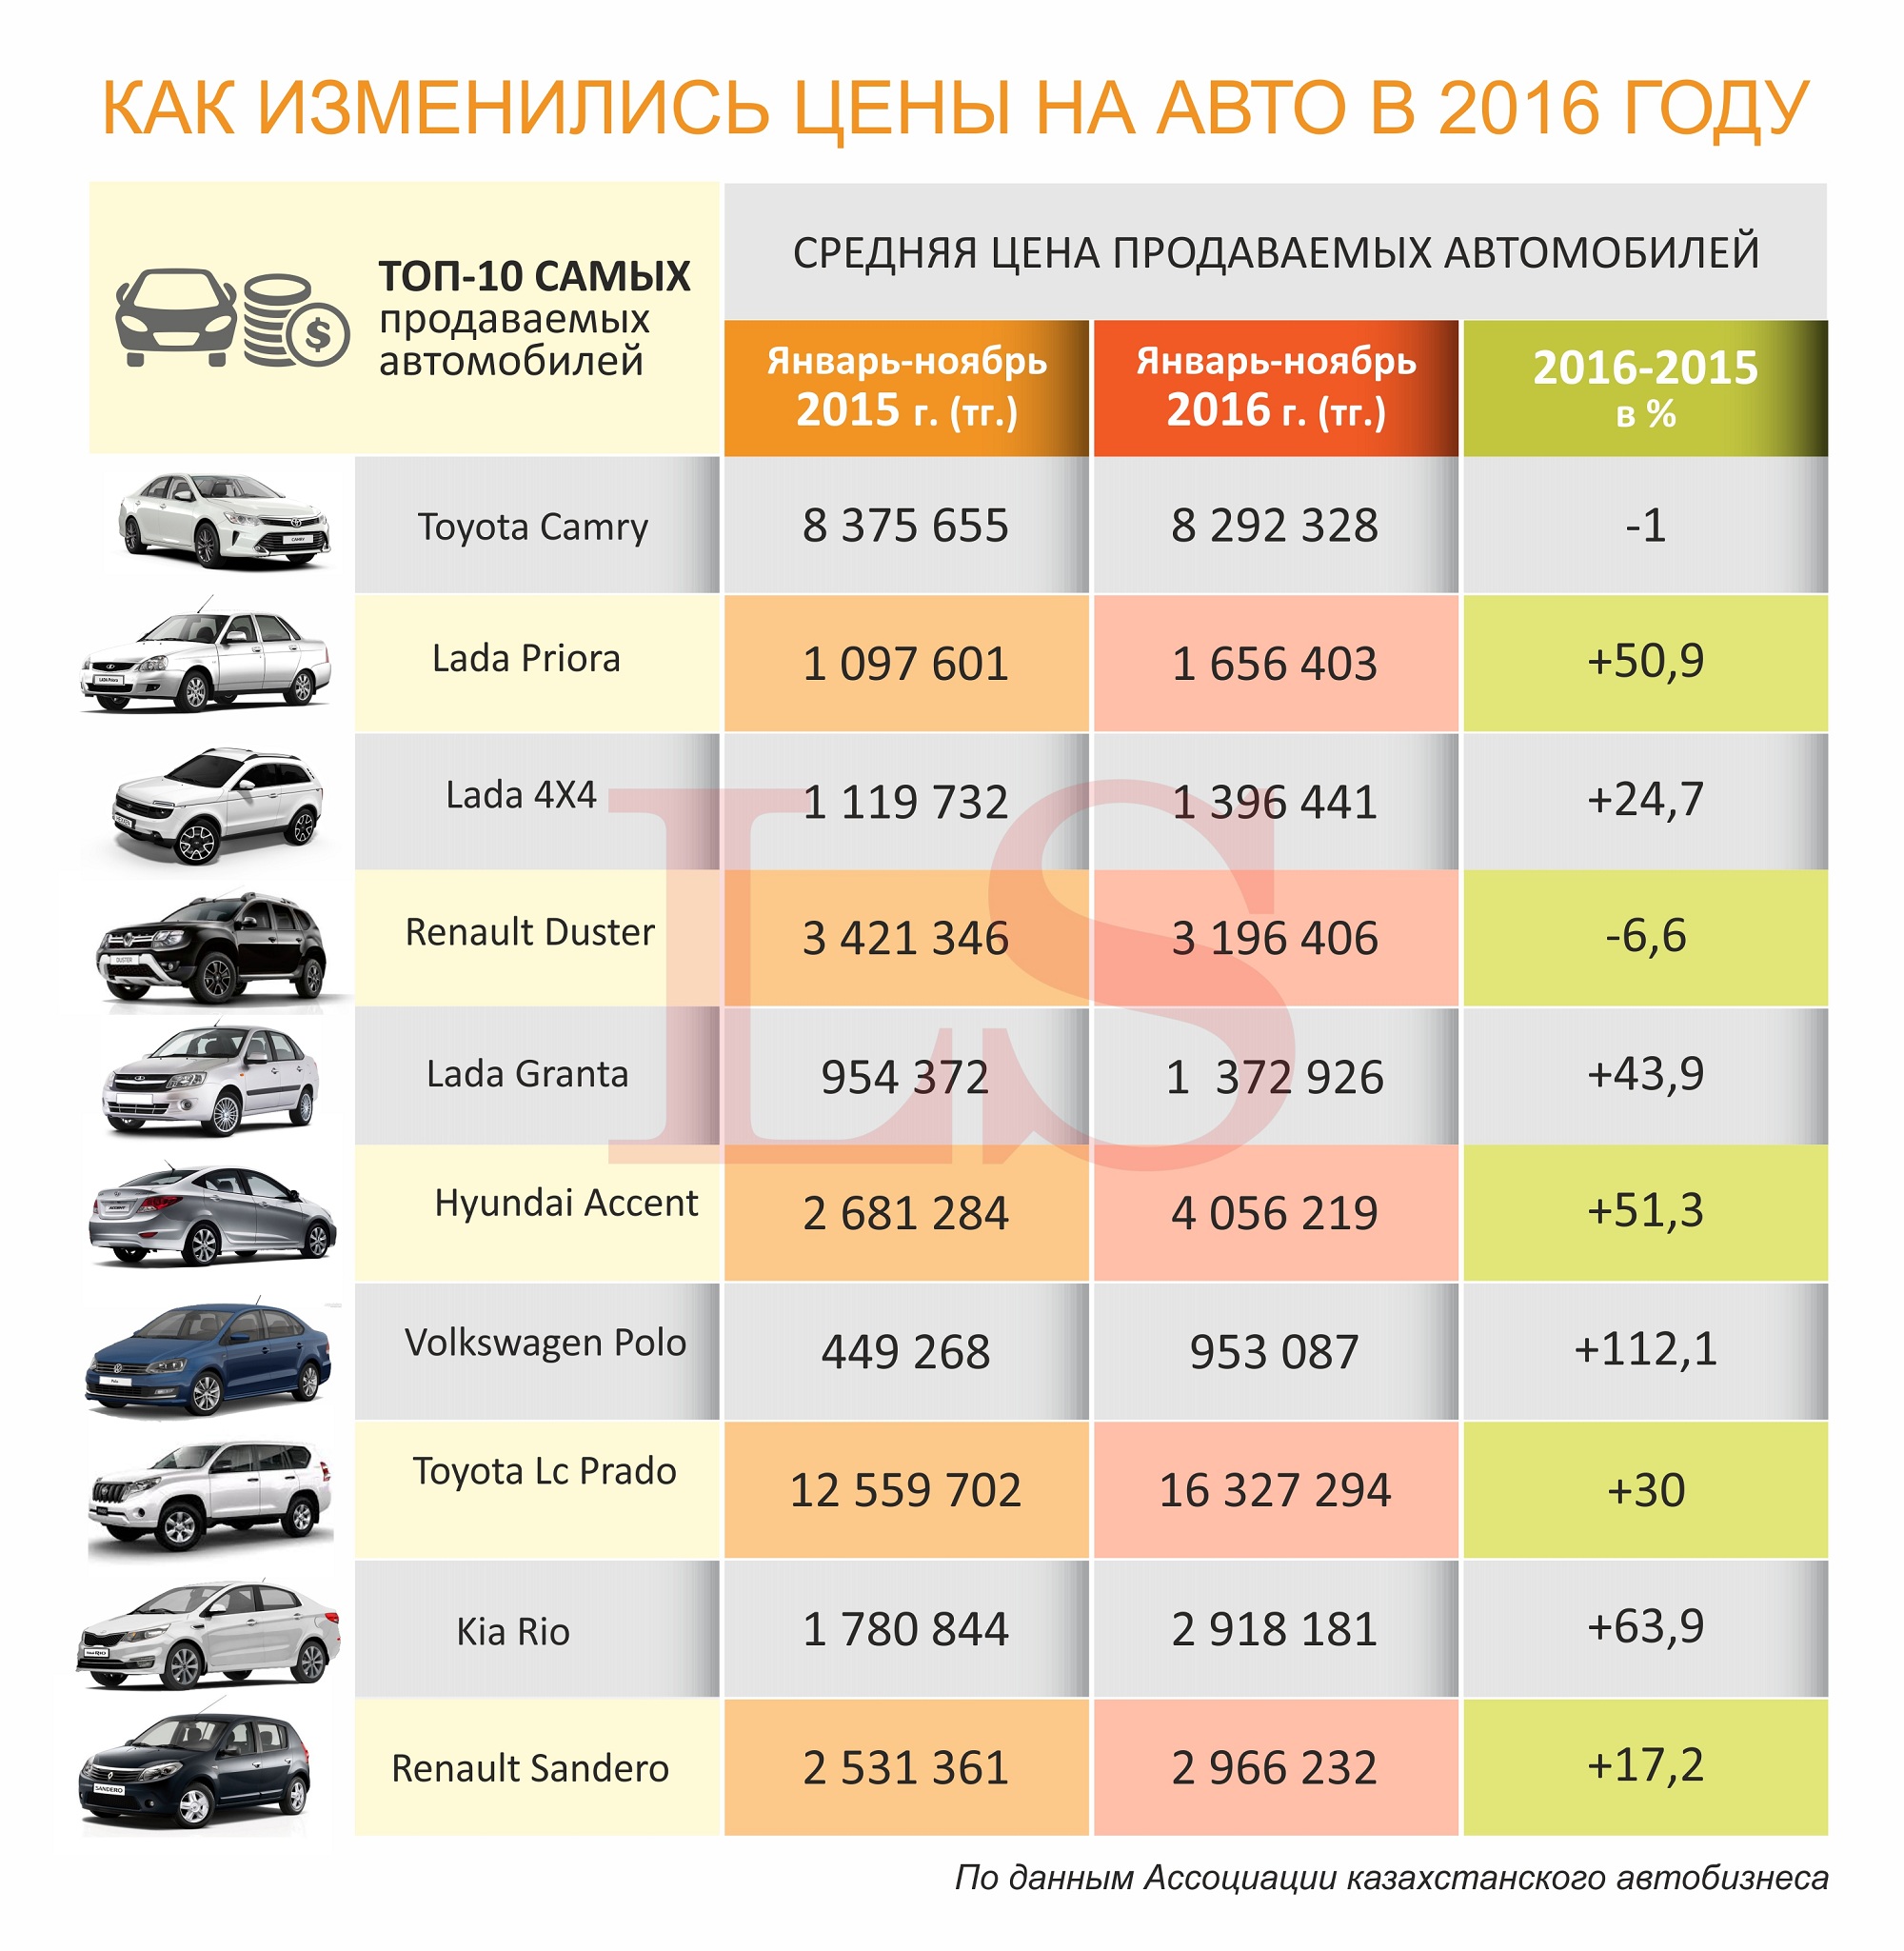 цены на машины в 2015